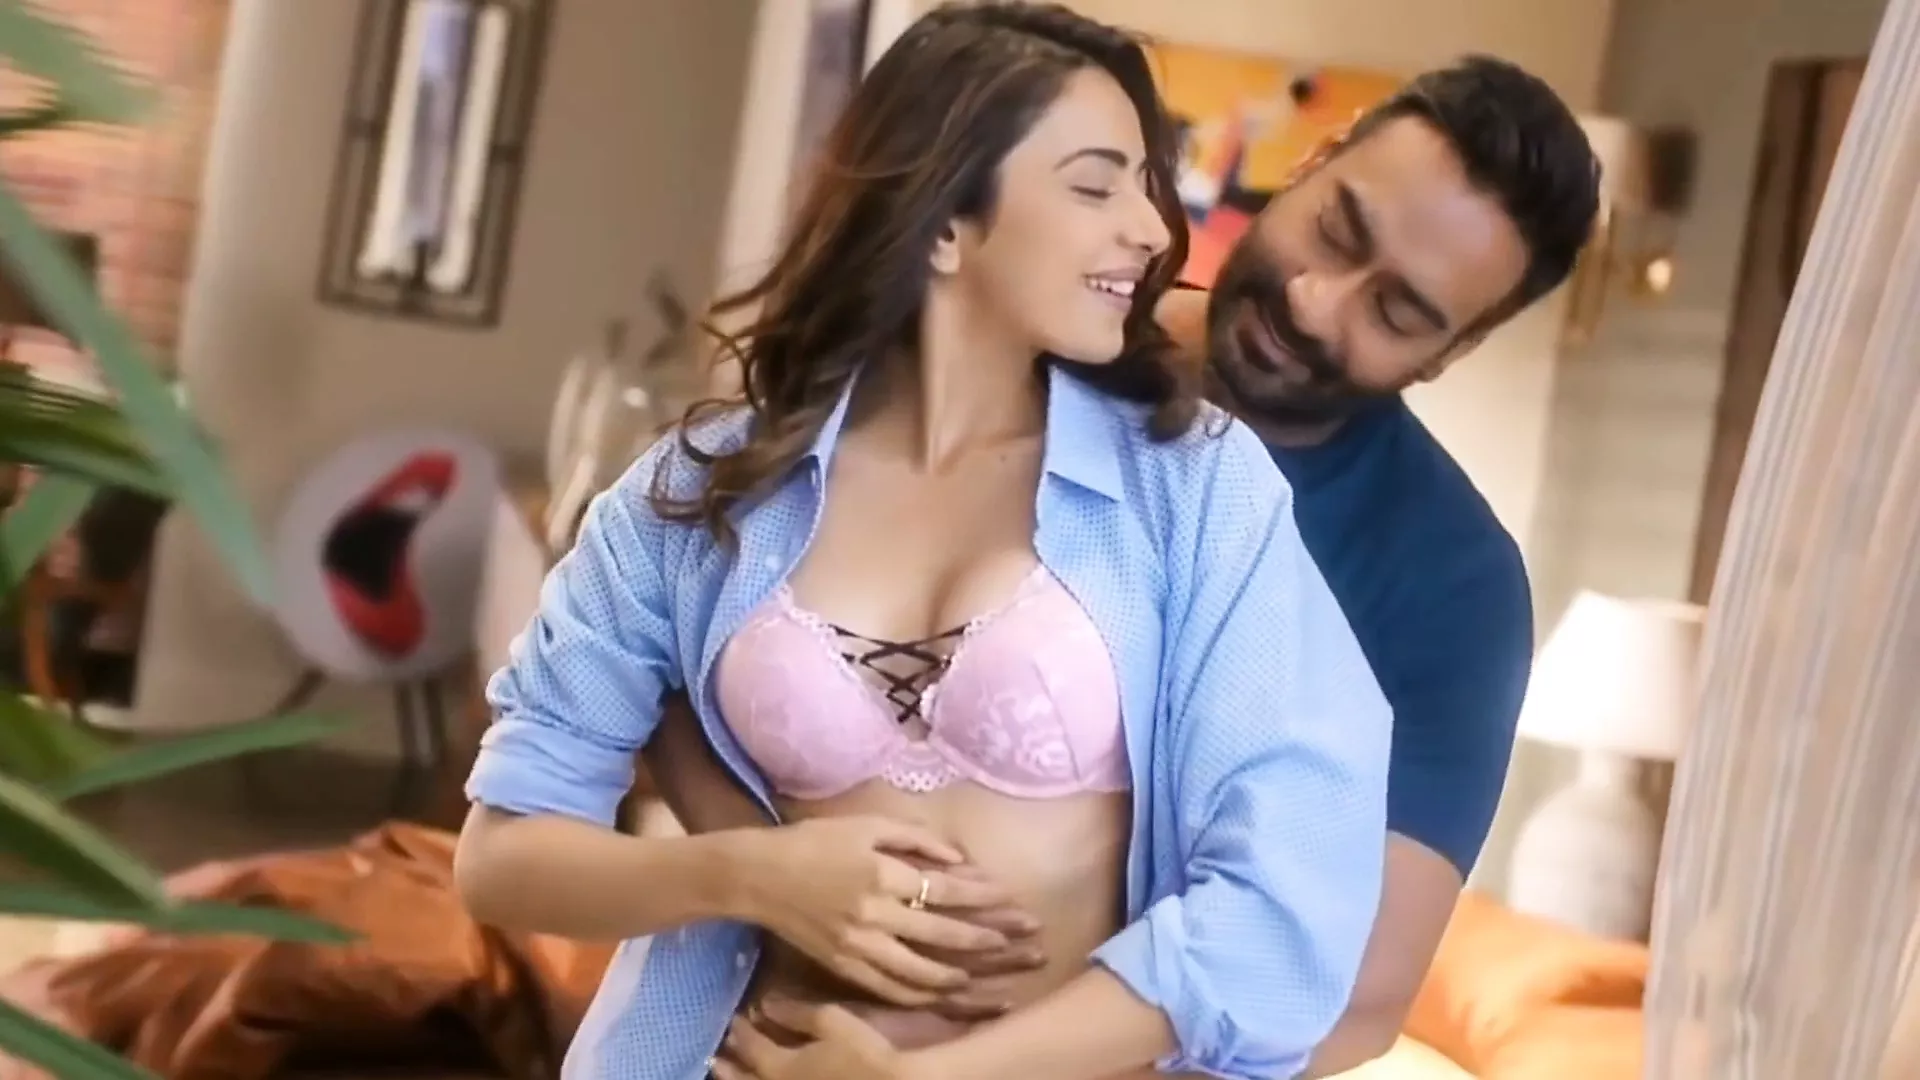 Www Rakul Preeth Singh Sex Com - Rahul Preet Singh Hot Kiss Tribute, Free Porn c3 | xHamster